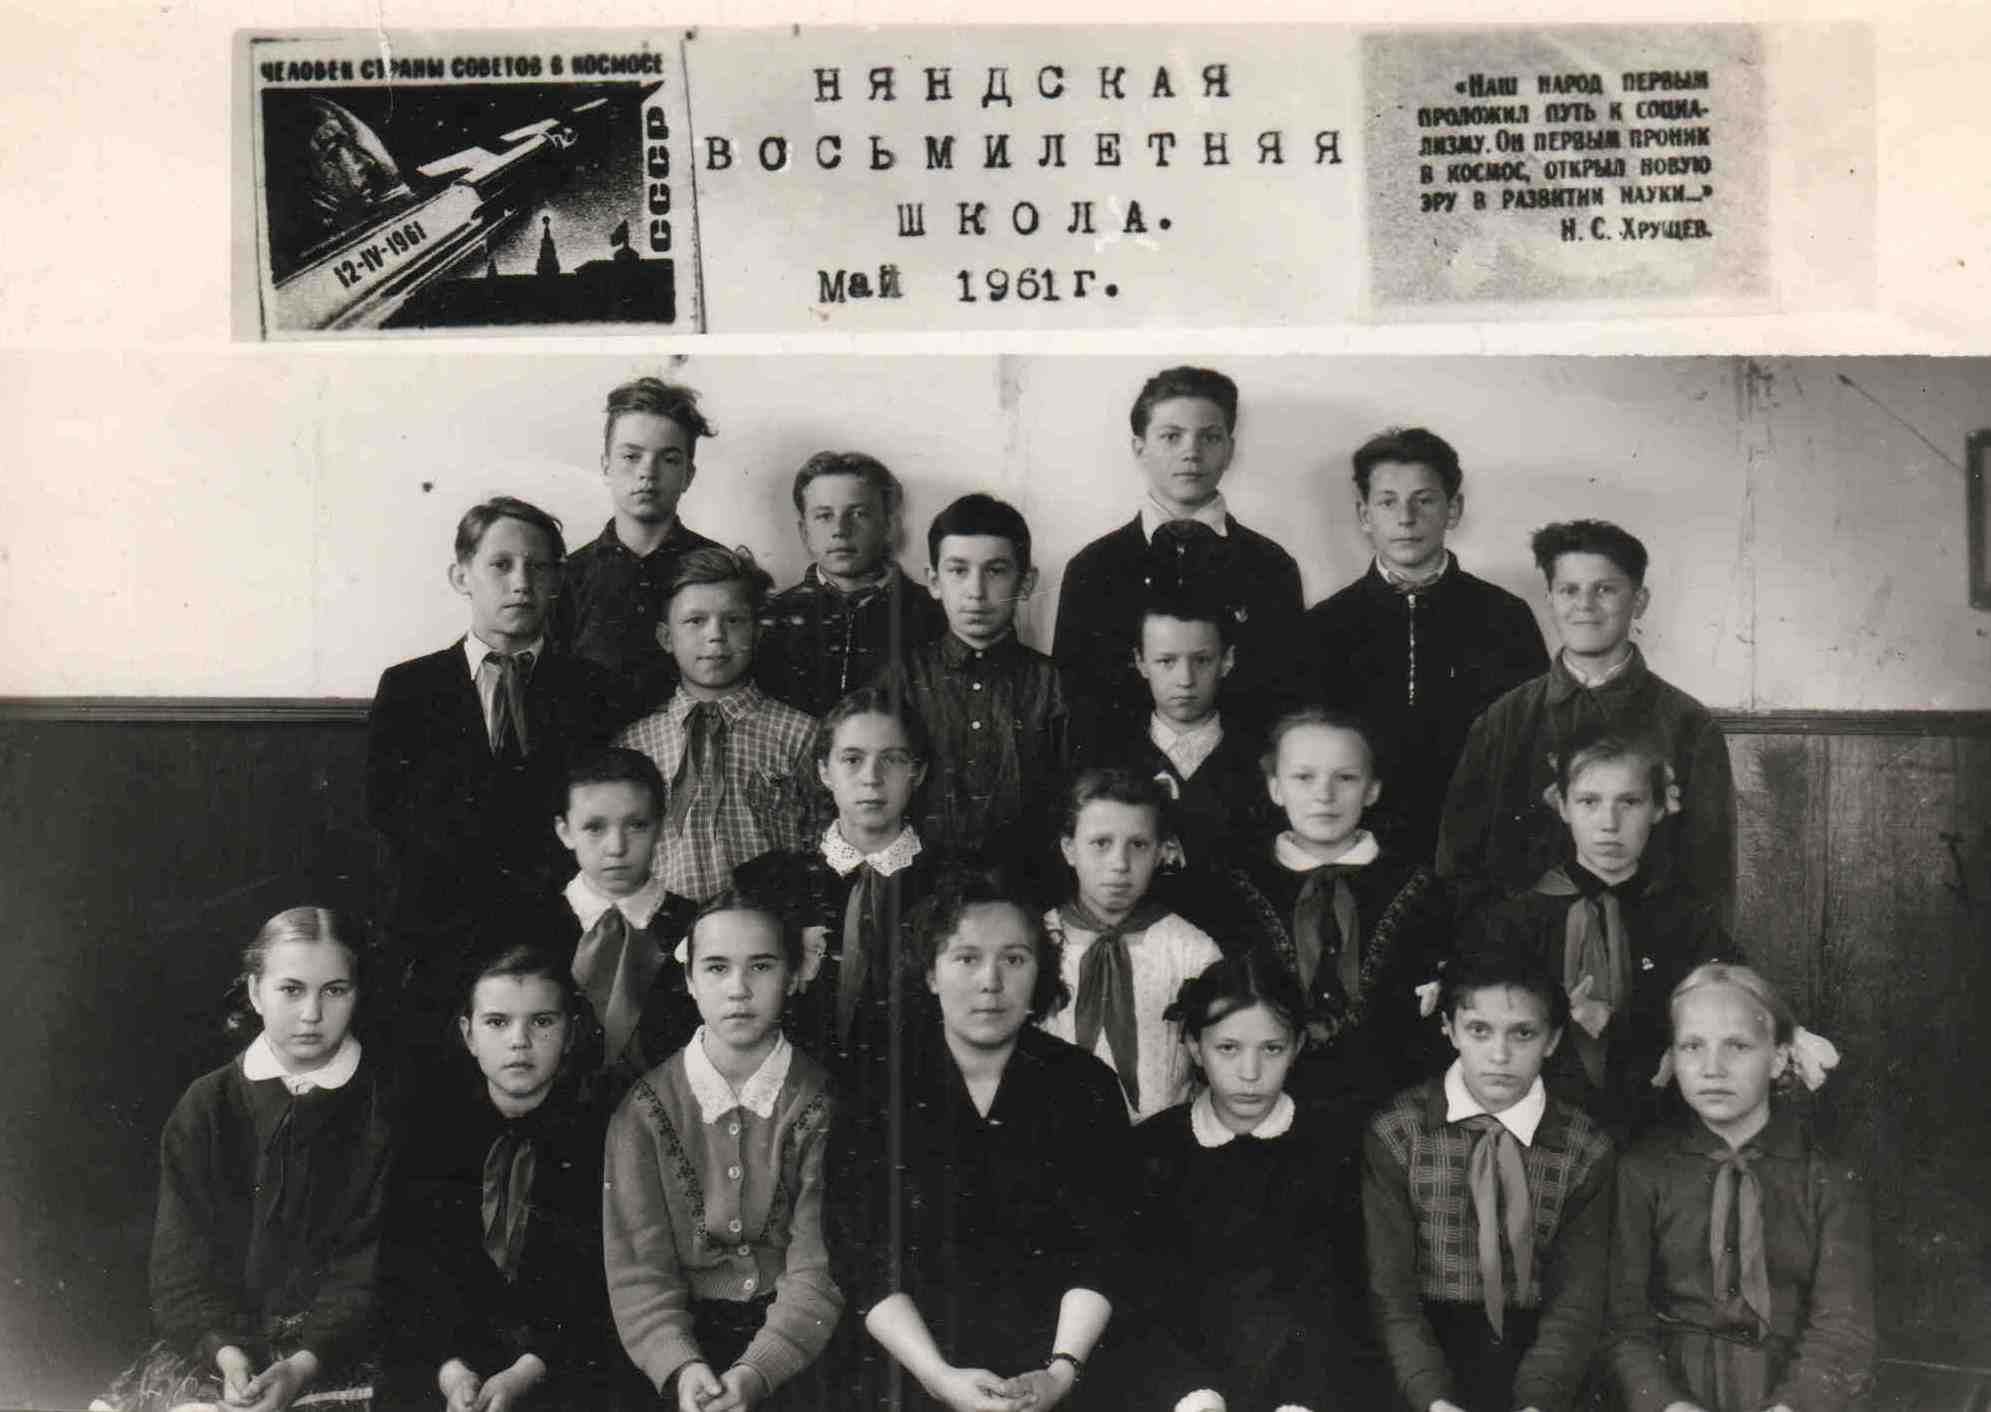 0.1 Няндская восьмилетняя школа, май 1961 г. Архив Рябцев А.Еф.